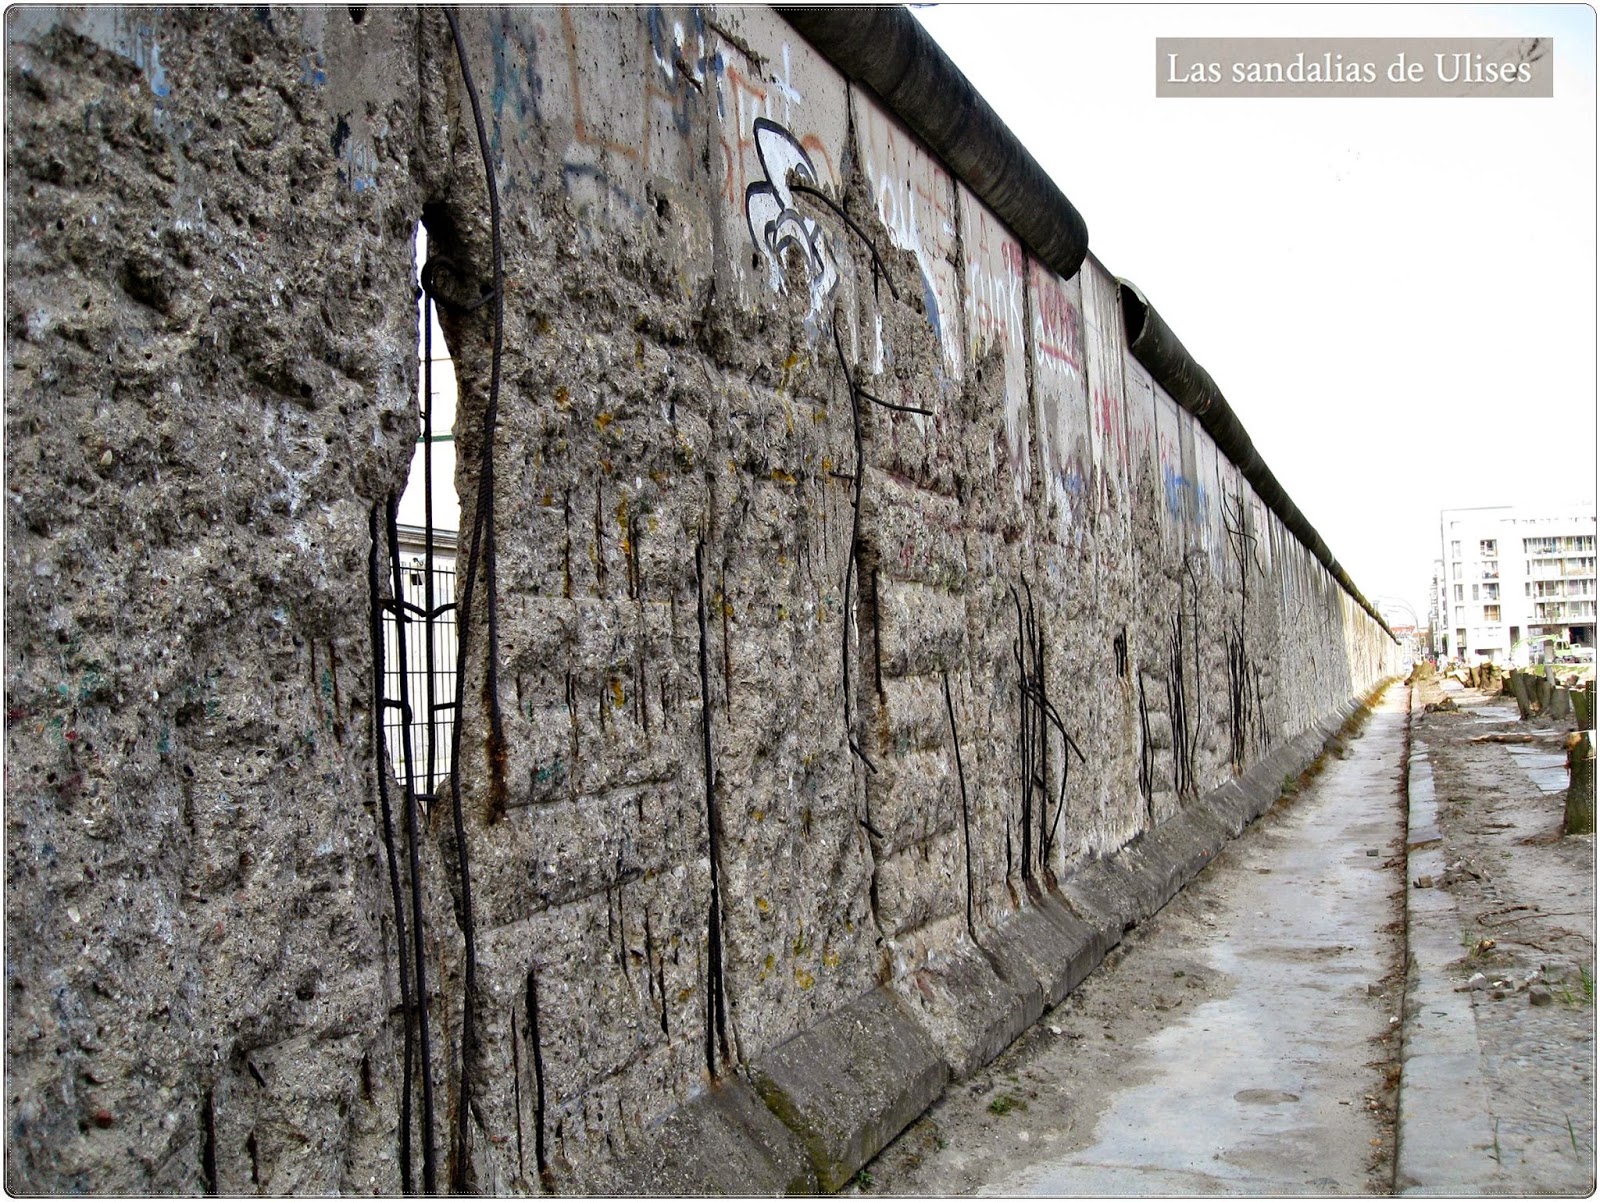 Resentimiento Plasticidad Cualquier El muro de Berlin | Las sandalias de Ulises